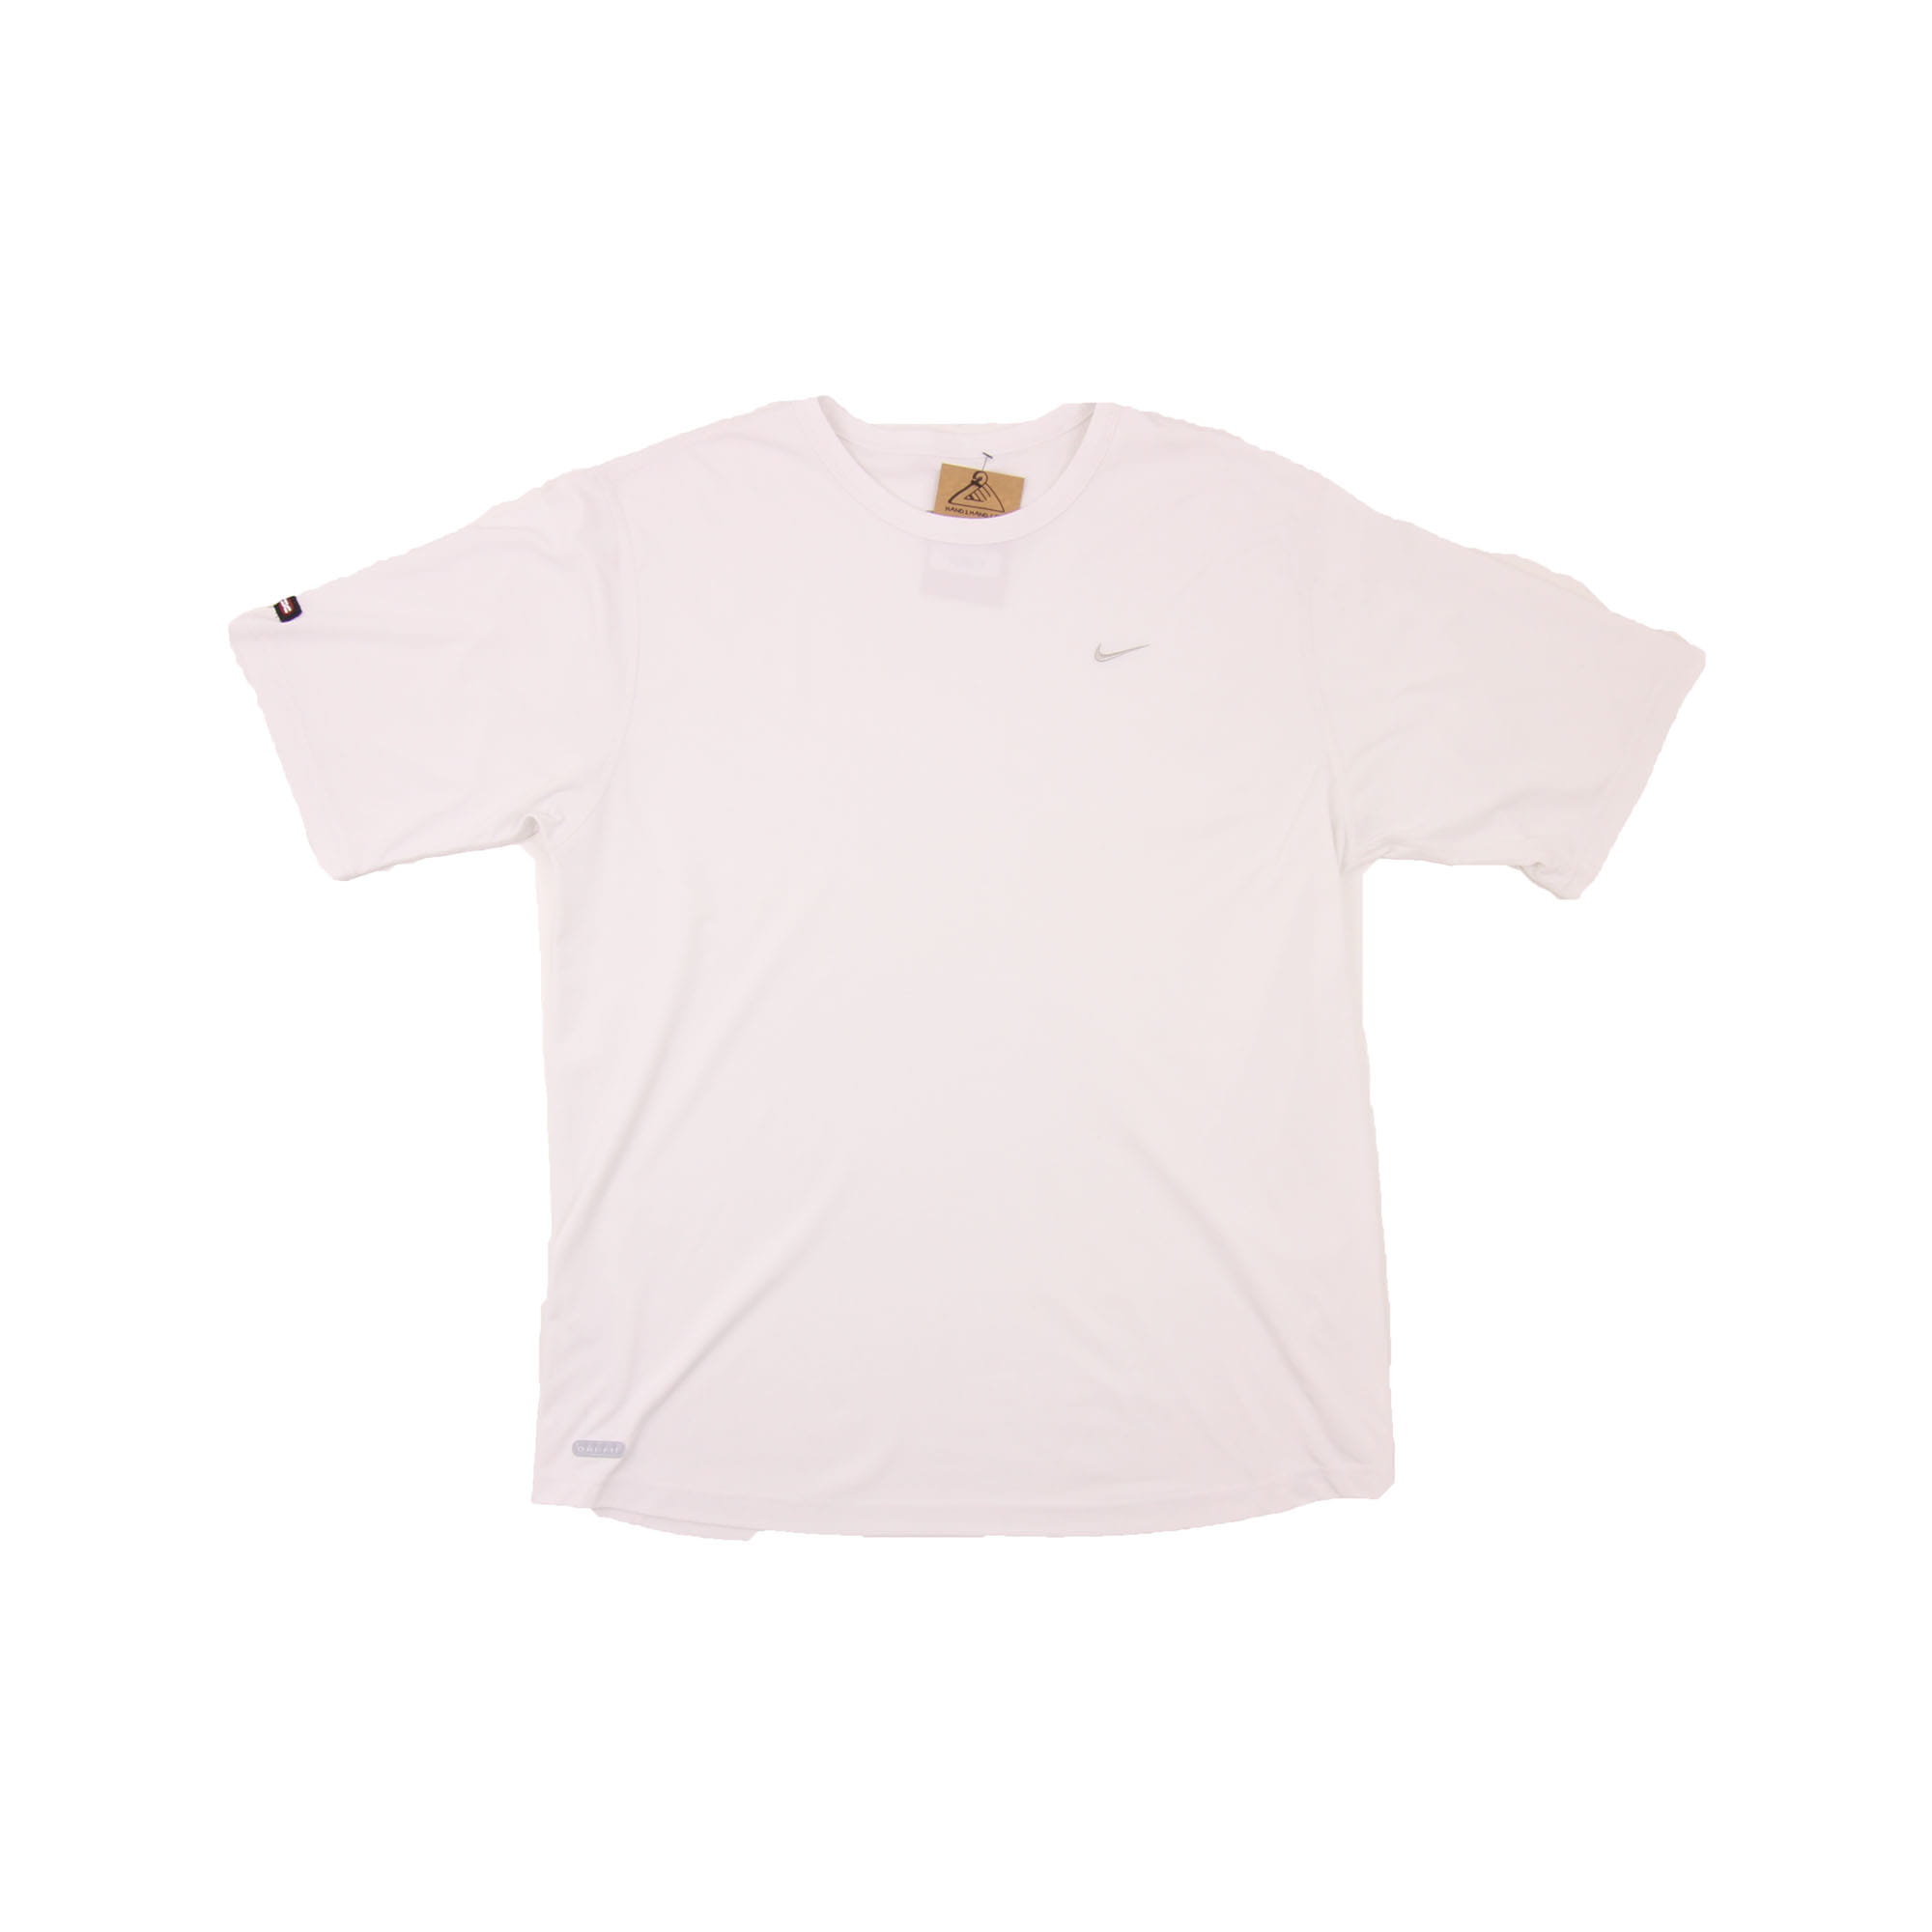 Nike T-Shirt White -  L/XL